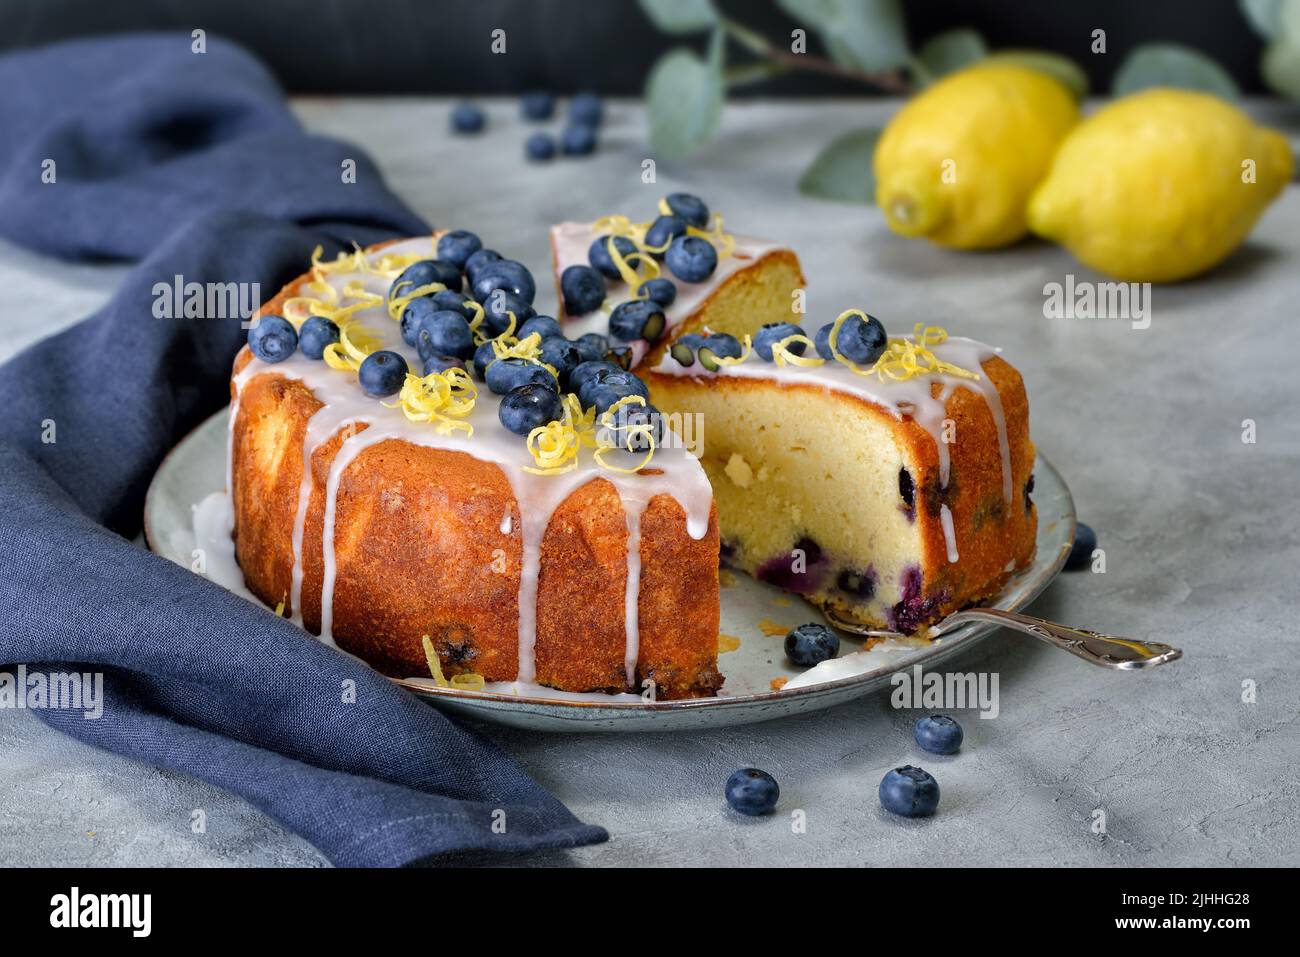 Gâteau au citron et aux myrtilles recouvert de sucre glace, de baies et de zeste de citron Banque D'Images